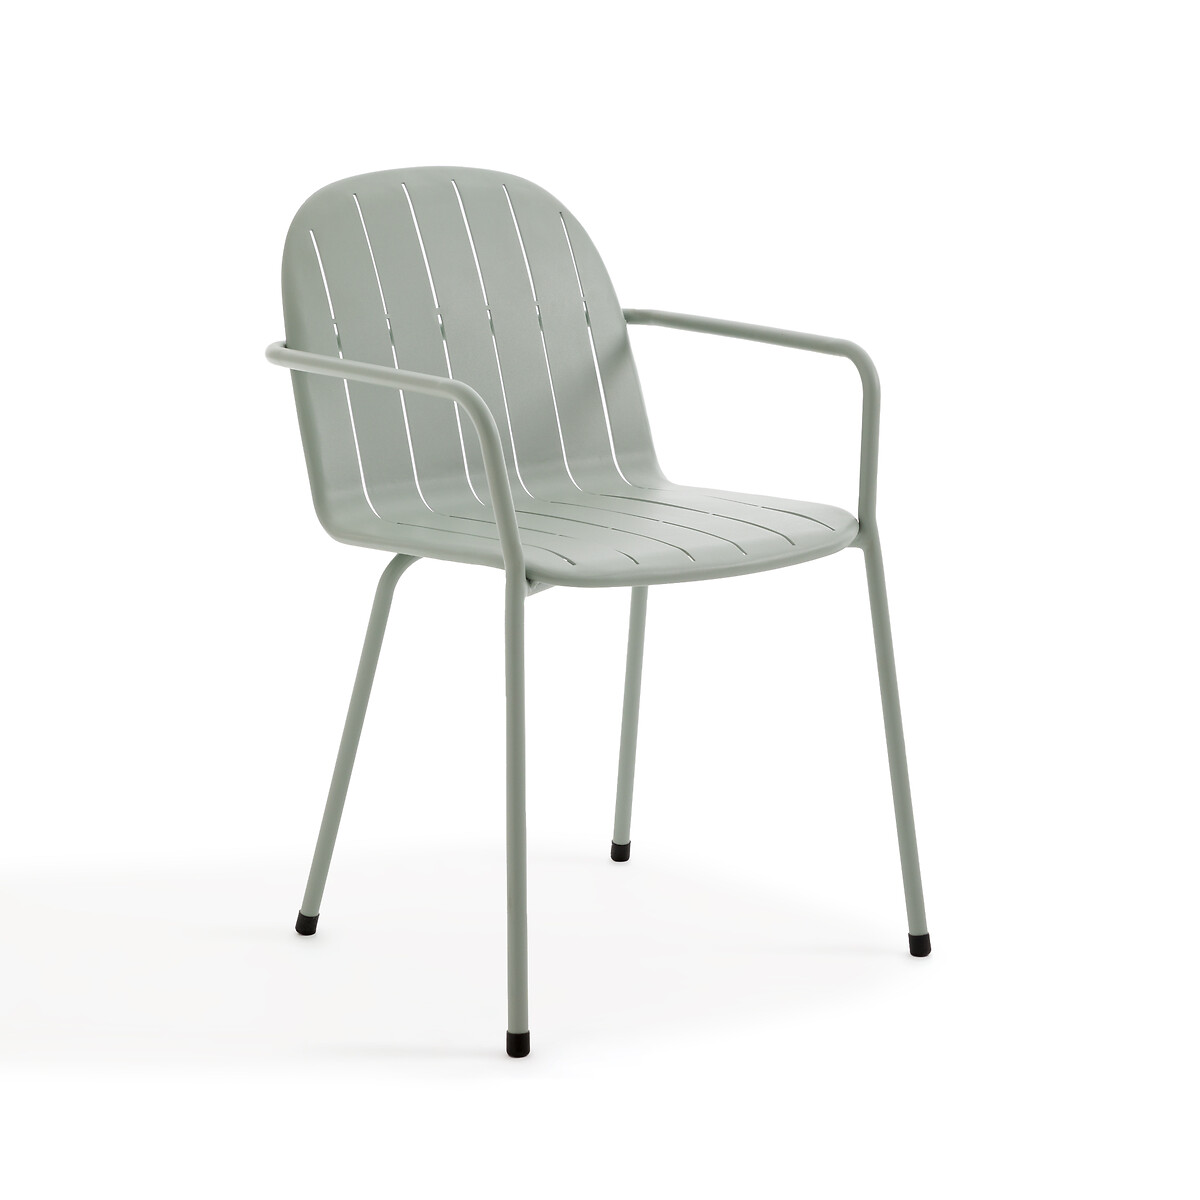 Кресло для столовой садовое из алюминия Kotanne единый размер зеленый